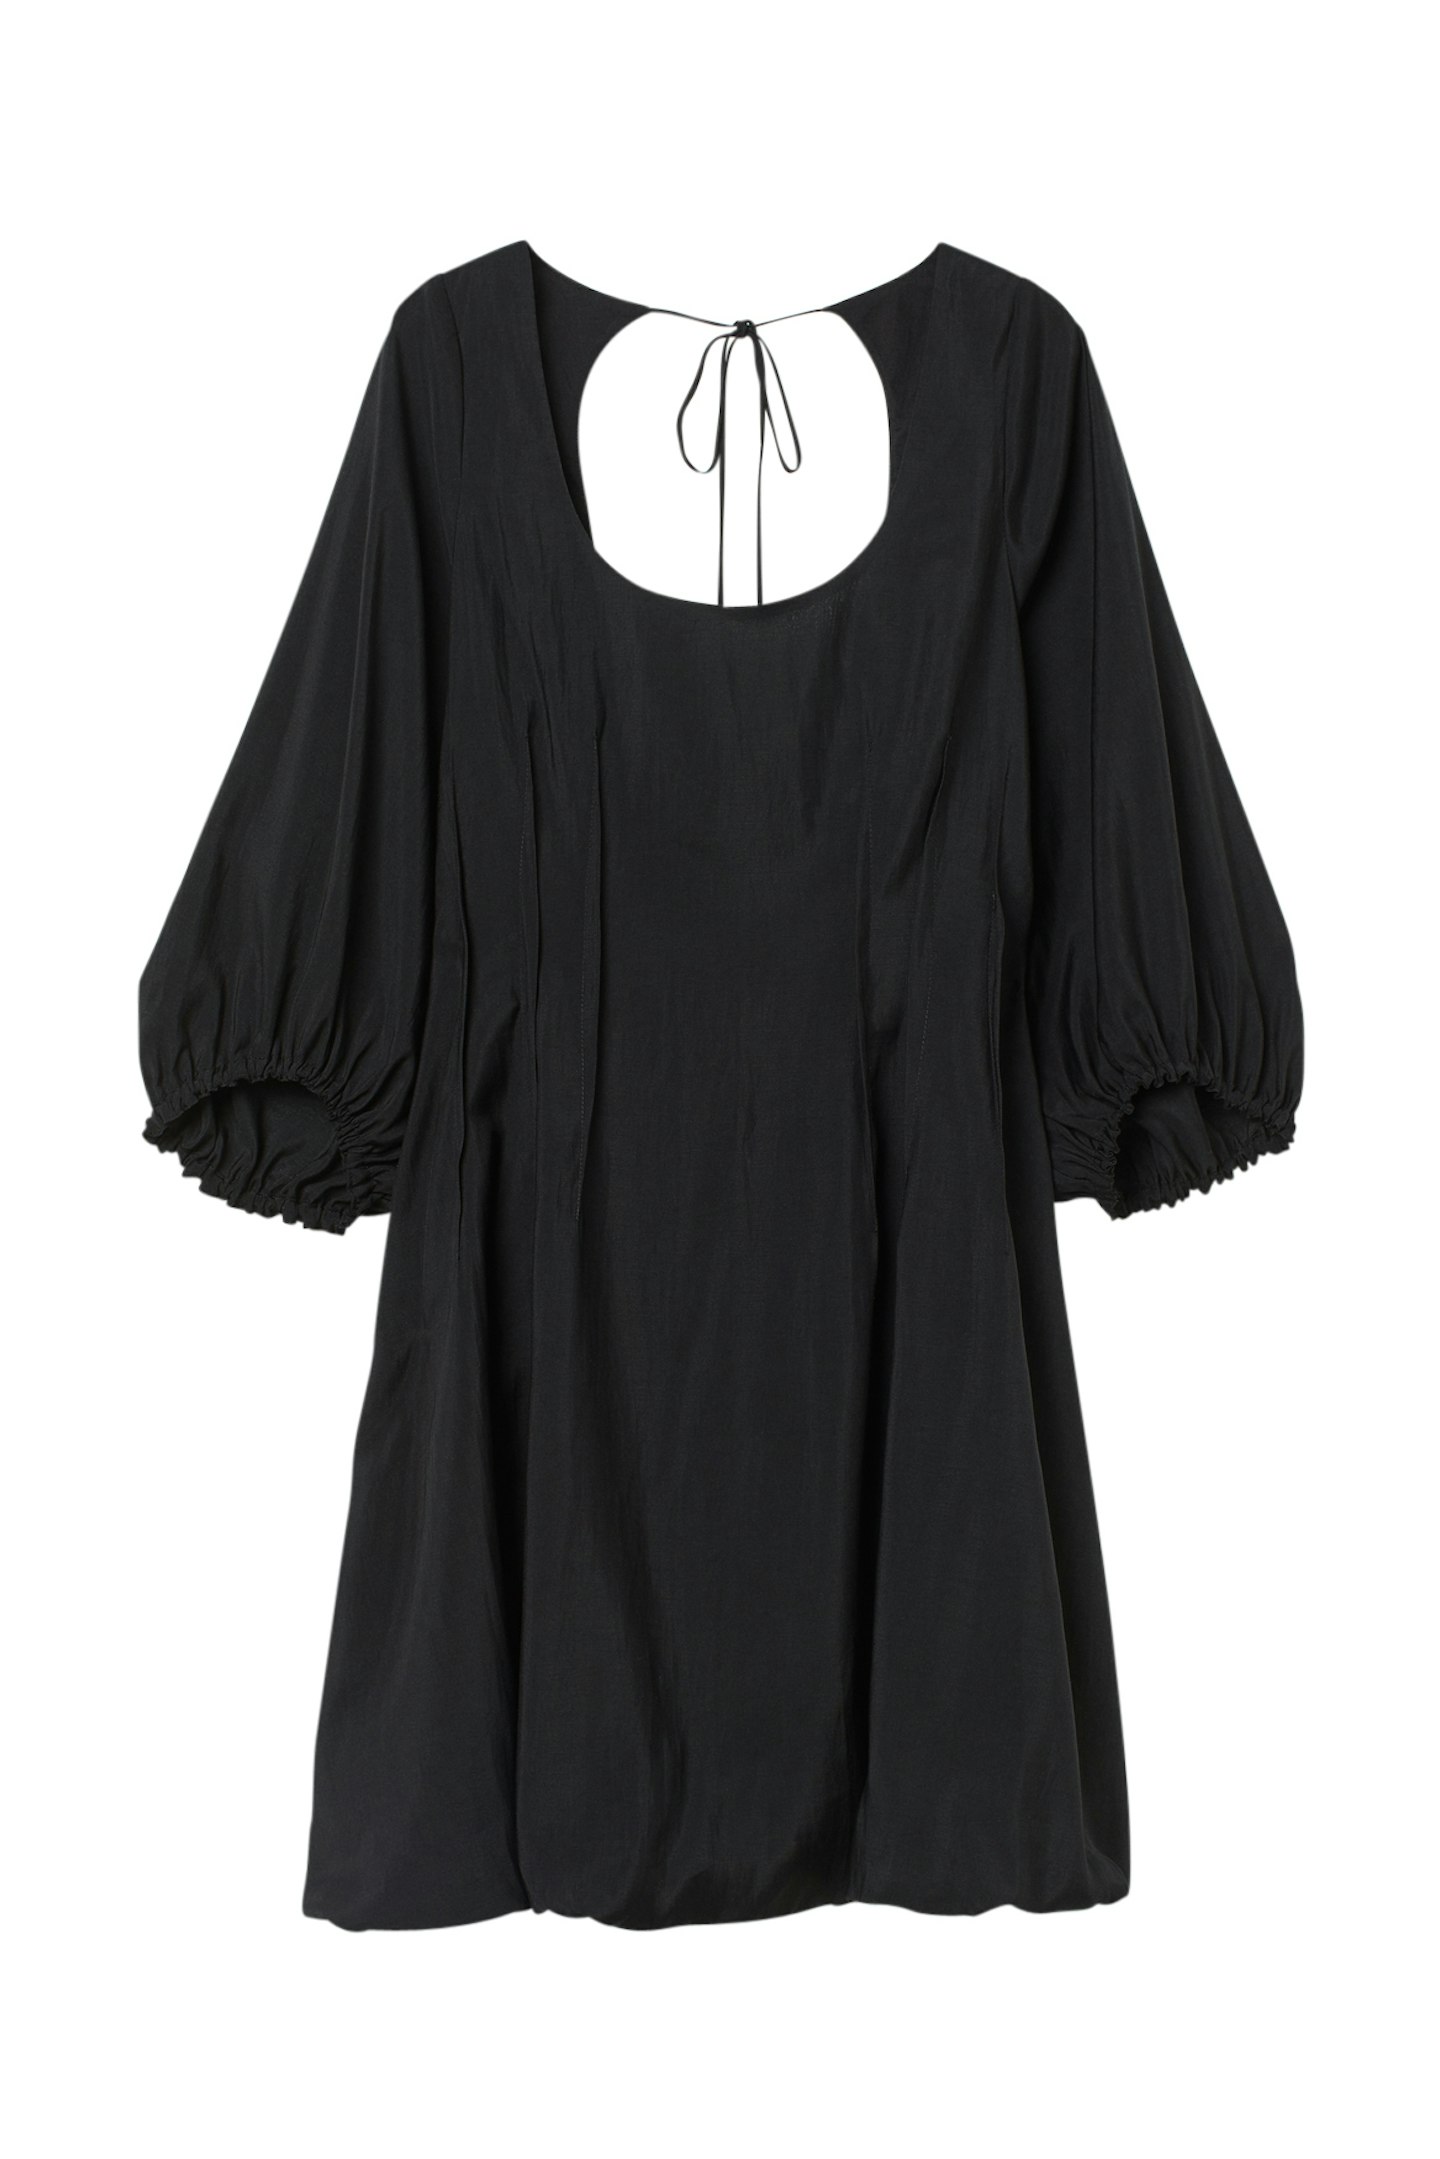 Black Long Sleeved Dress, £29.99